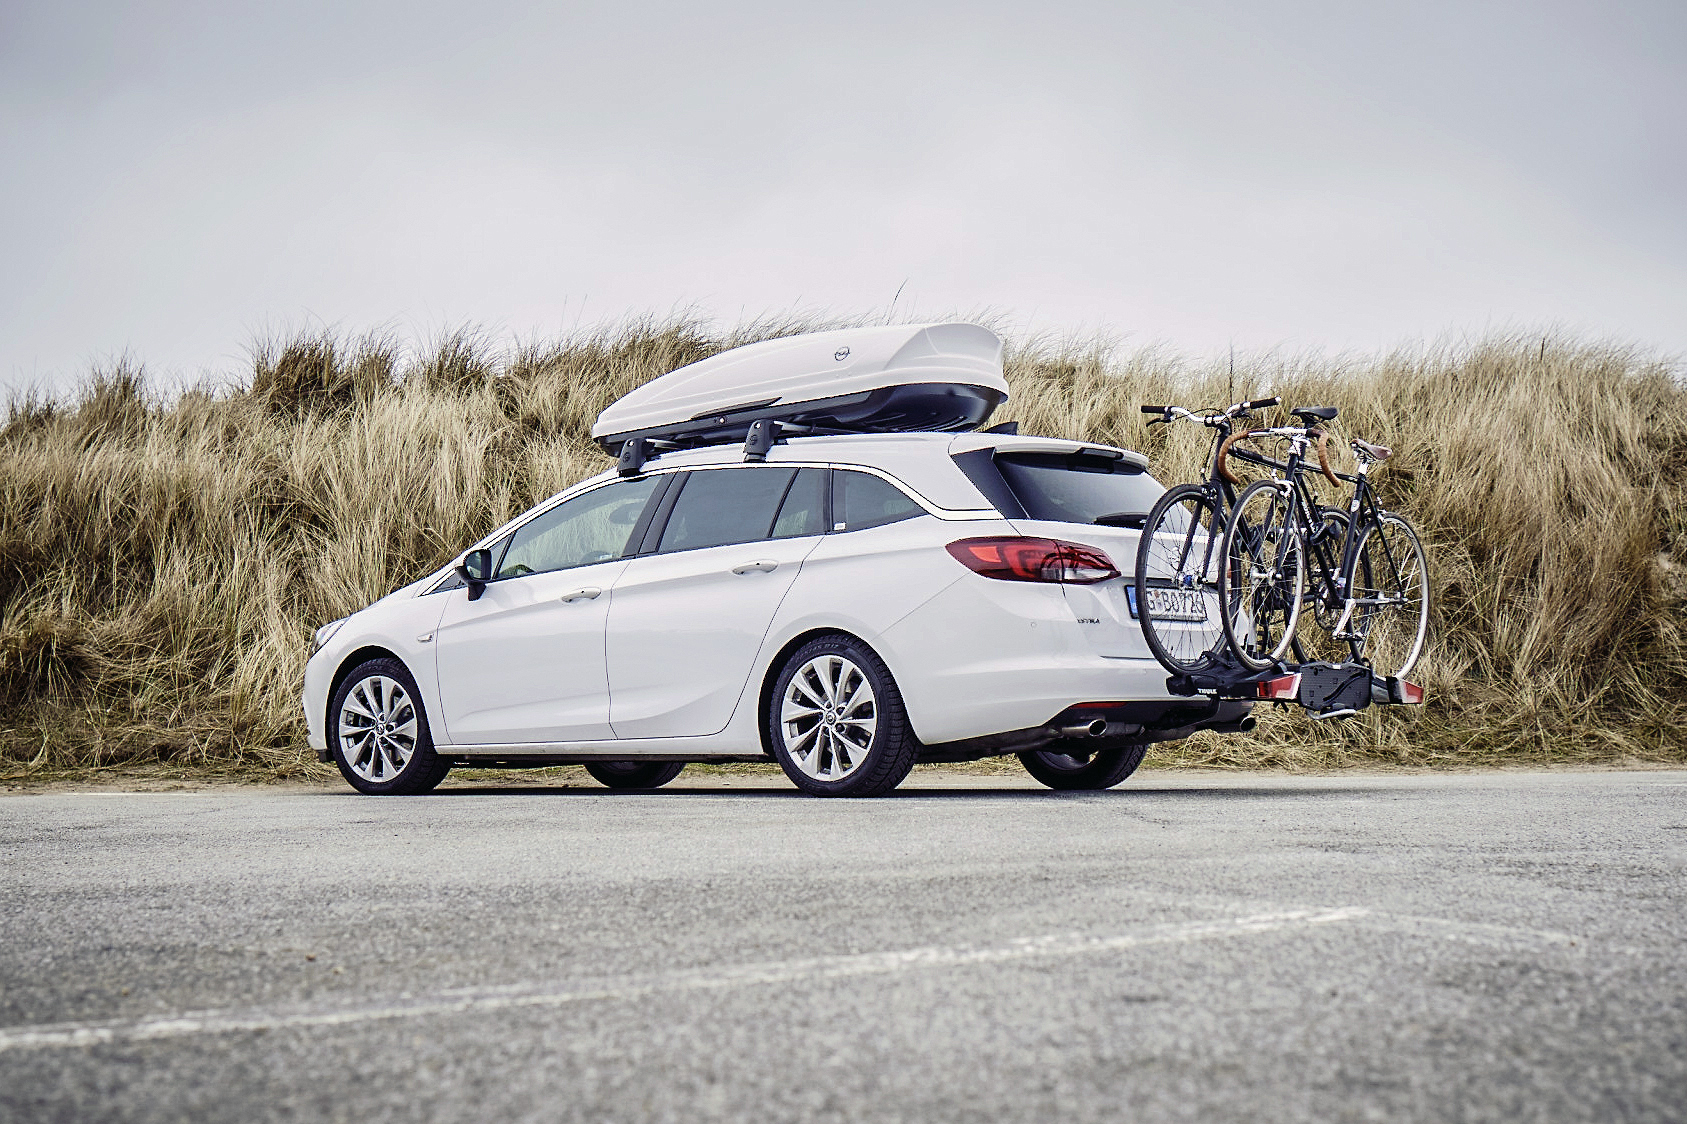 Ab in den Urlaub: Mit Original-Zubehör für den neuen Opel Astra